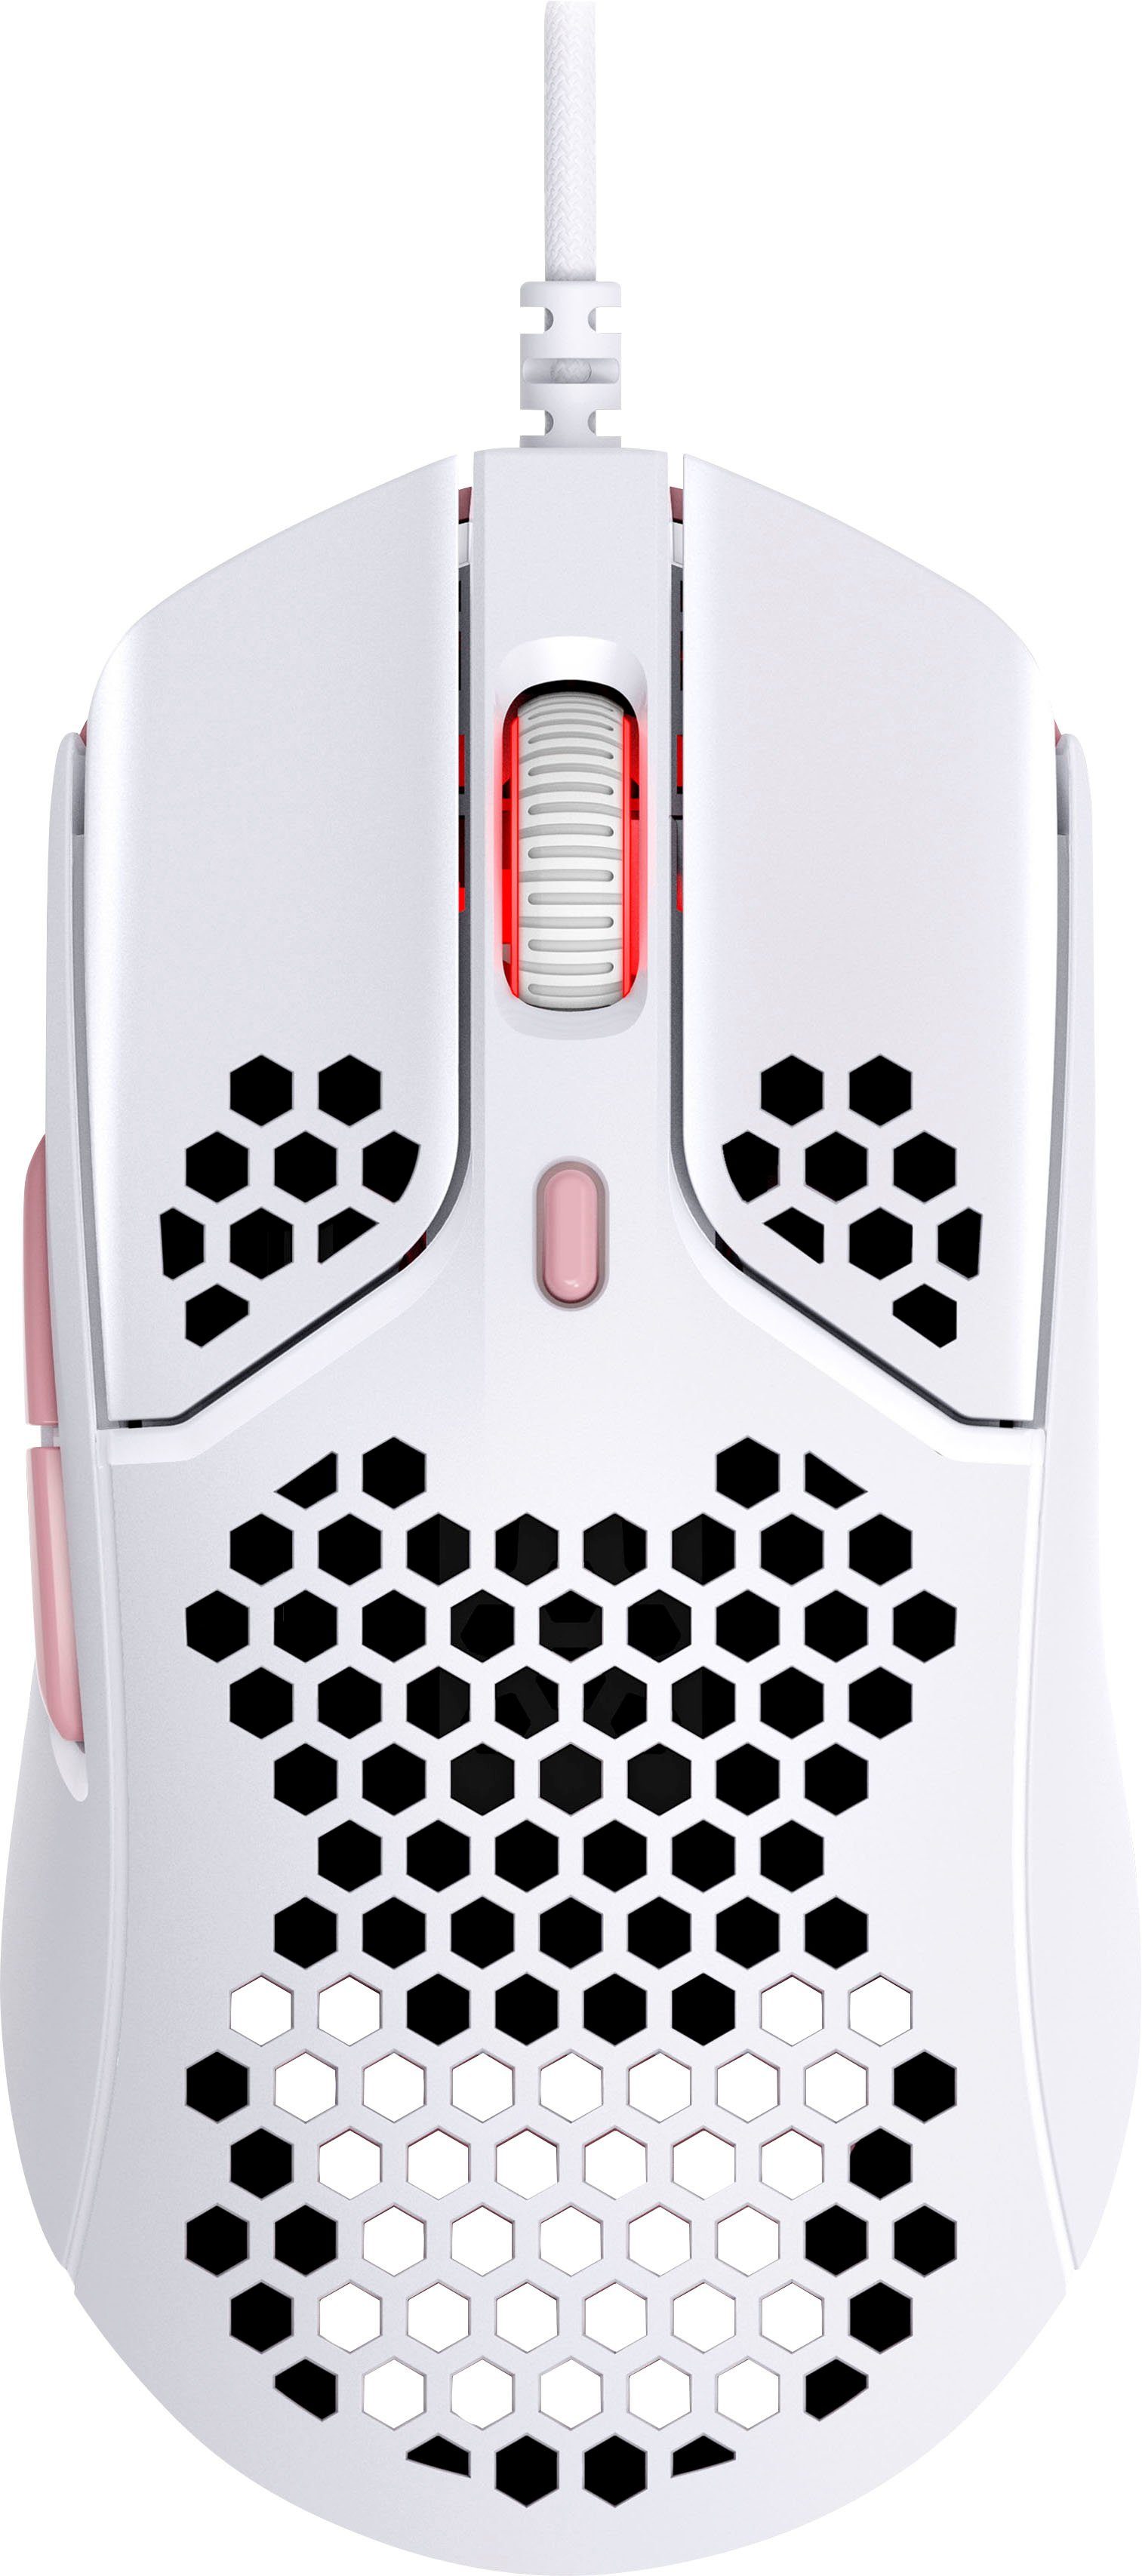 HyperX Pulsefire Haste rechtshändig Maus, Gaming-Maus kabelgebunden, Optische (kabelgebunden), Gaming- Wired